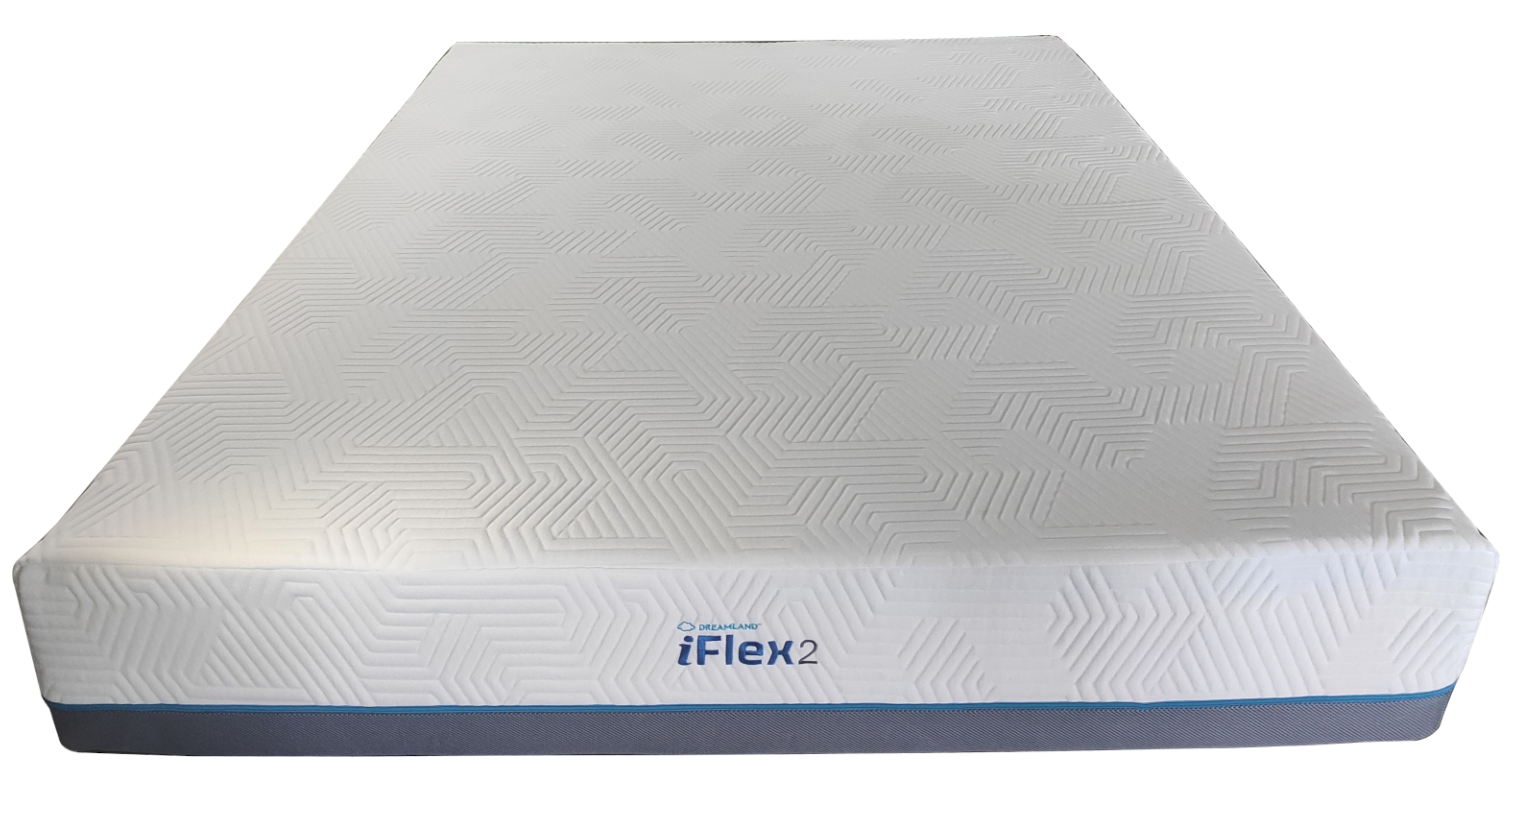 iFlex2-1536x1155